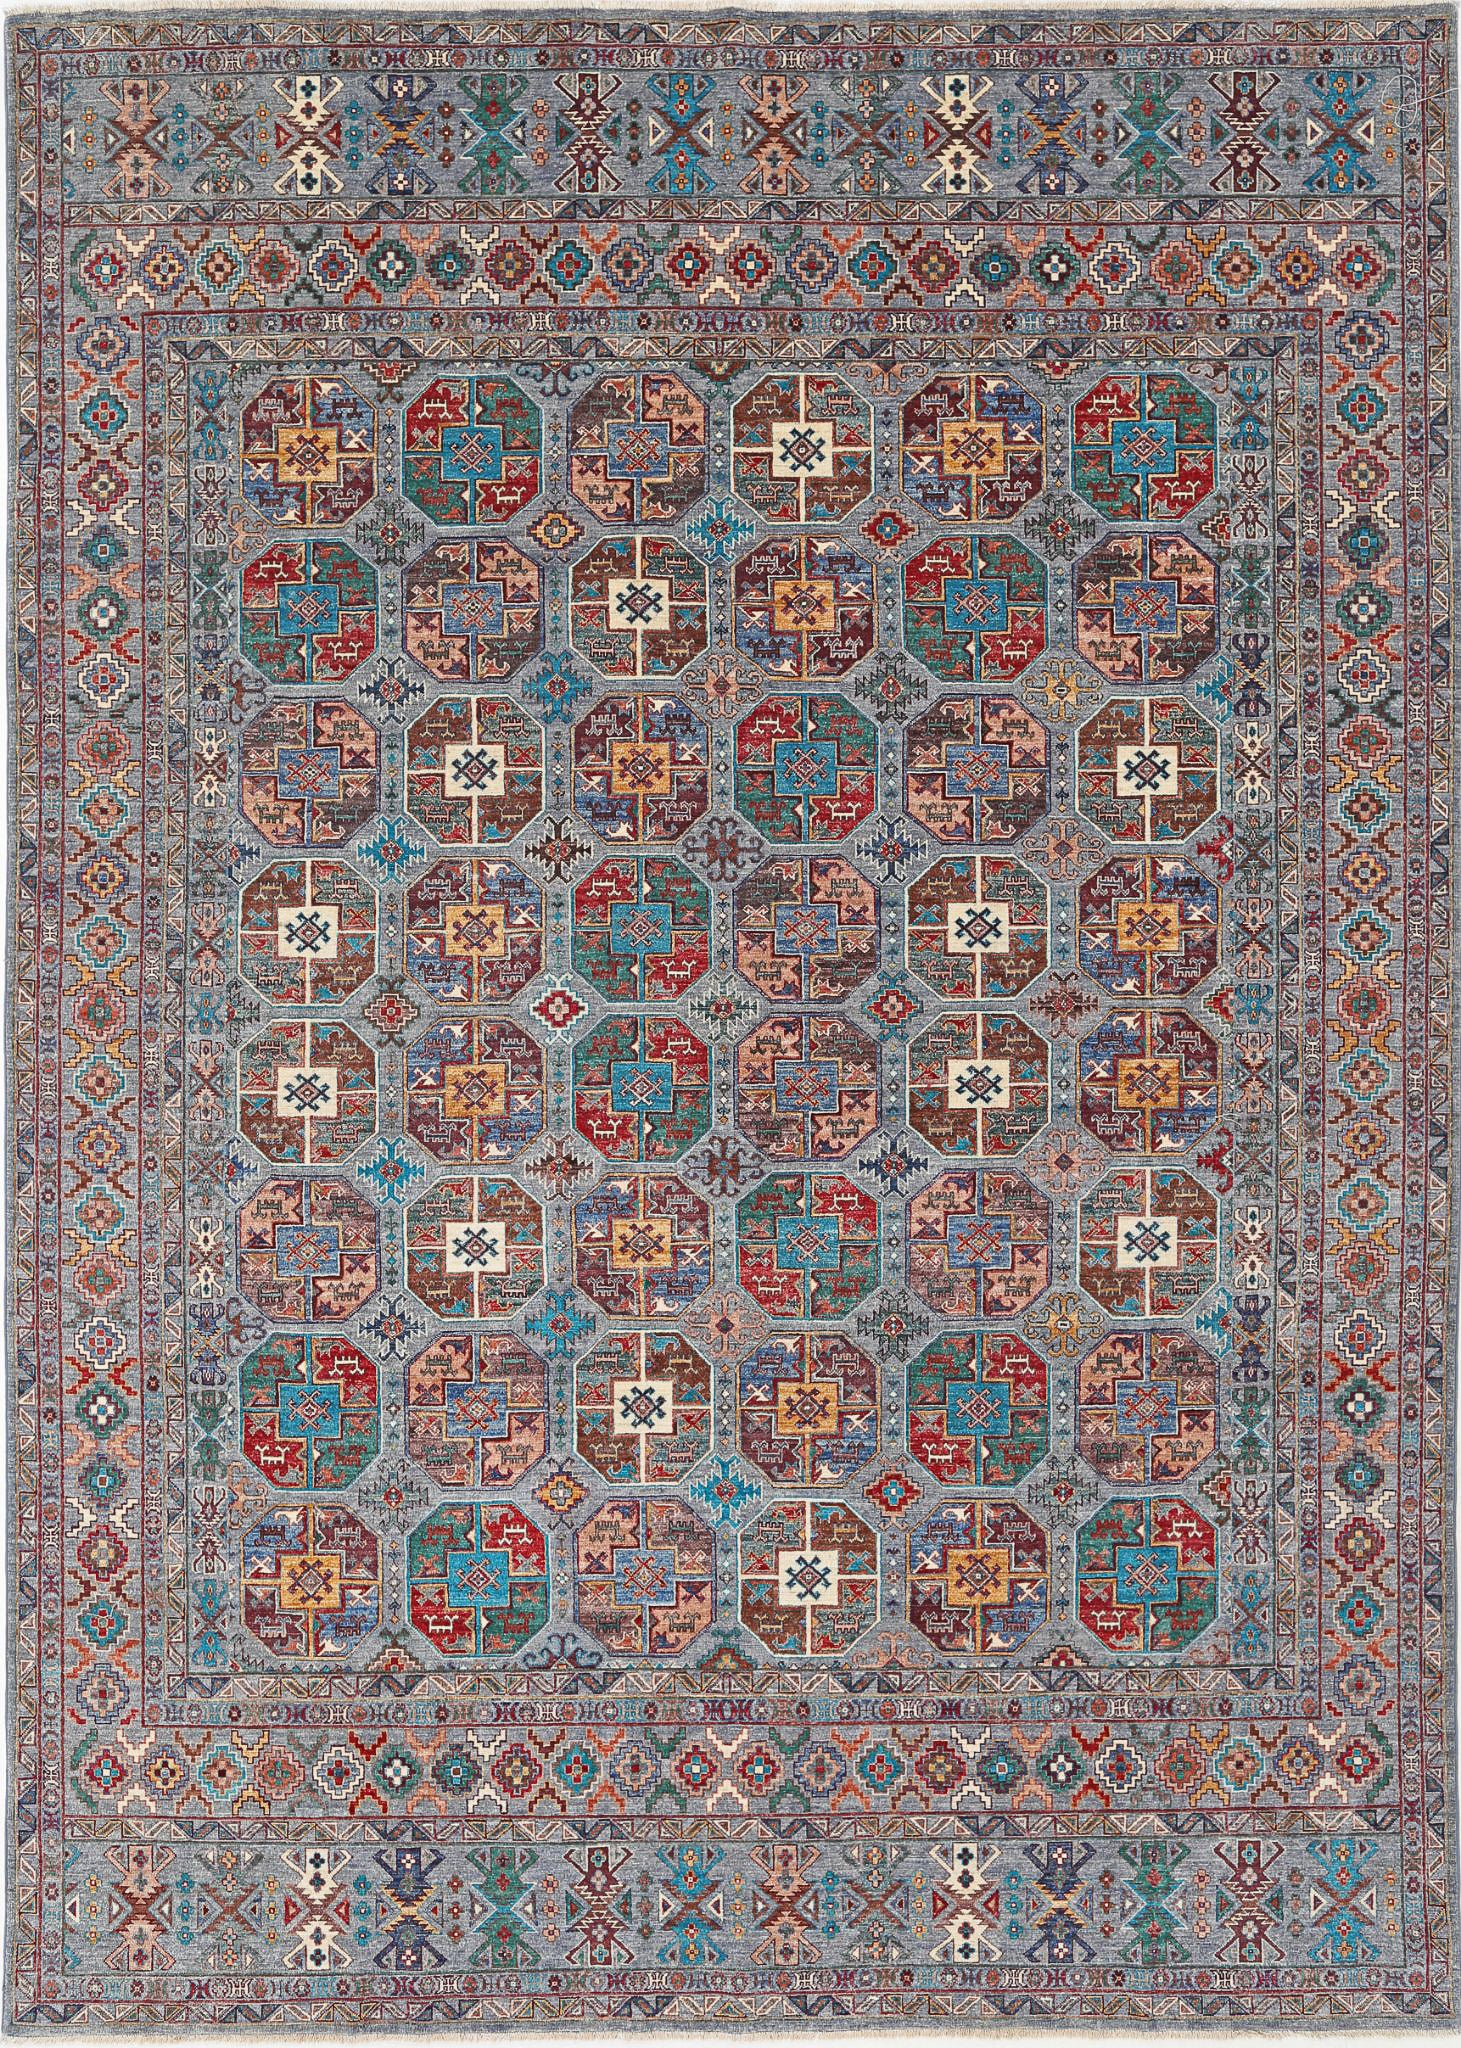 Jasmine-hand-knotted-sultani-wool-rug-5024715.jpg